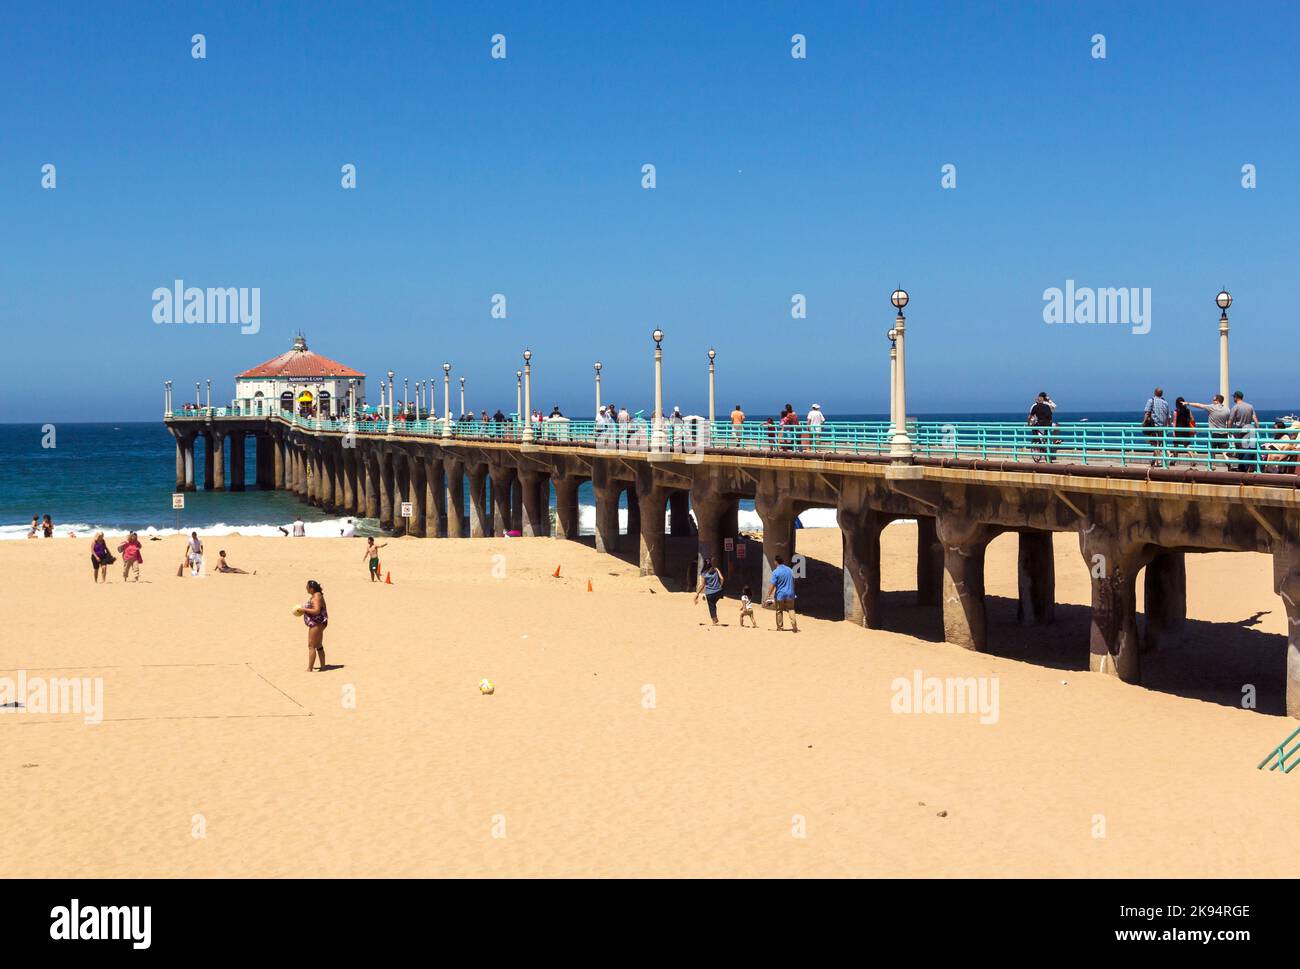 MANHATTAN BEACH, USA - Giugno 24: La gente gode la spiaggia al molo il 24 Giugno a Manhattan Beach, USA. Il famoso molo con la casa ottagonale era c Foto Stock